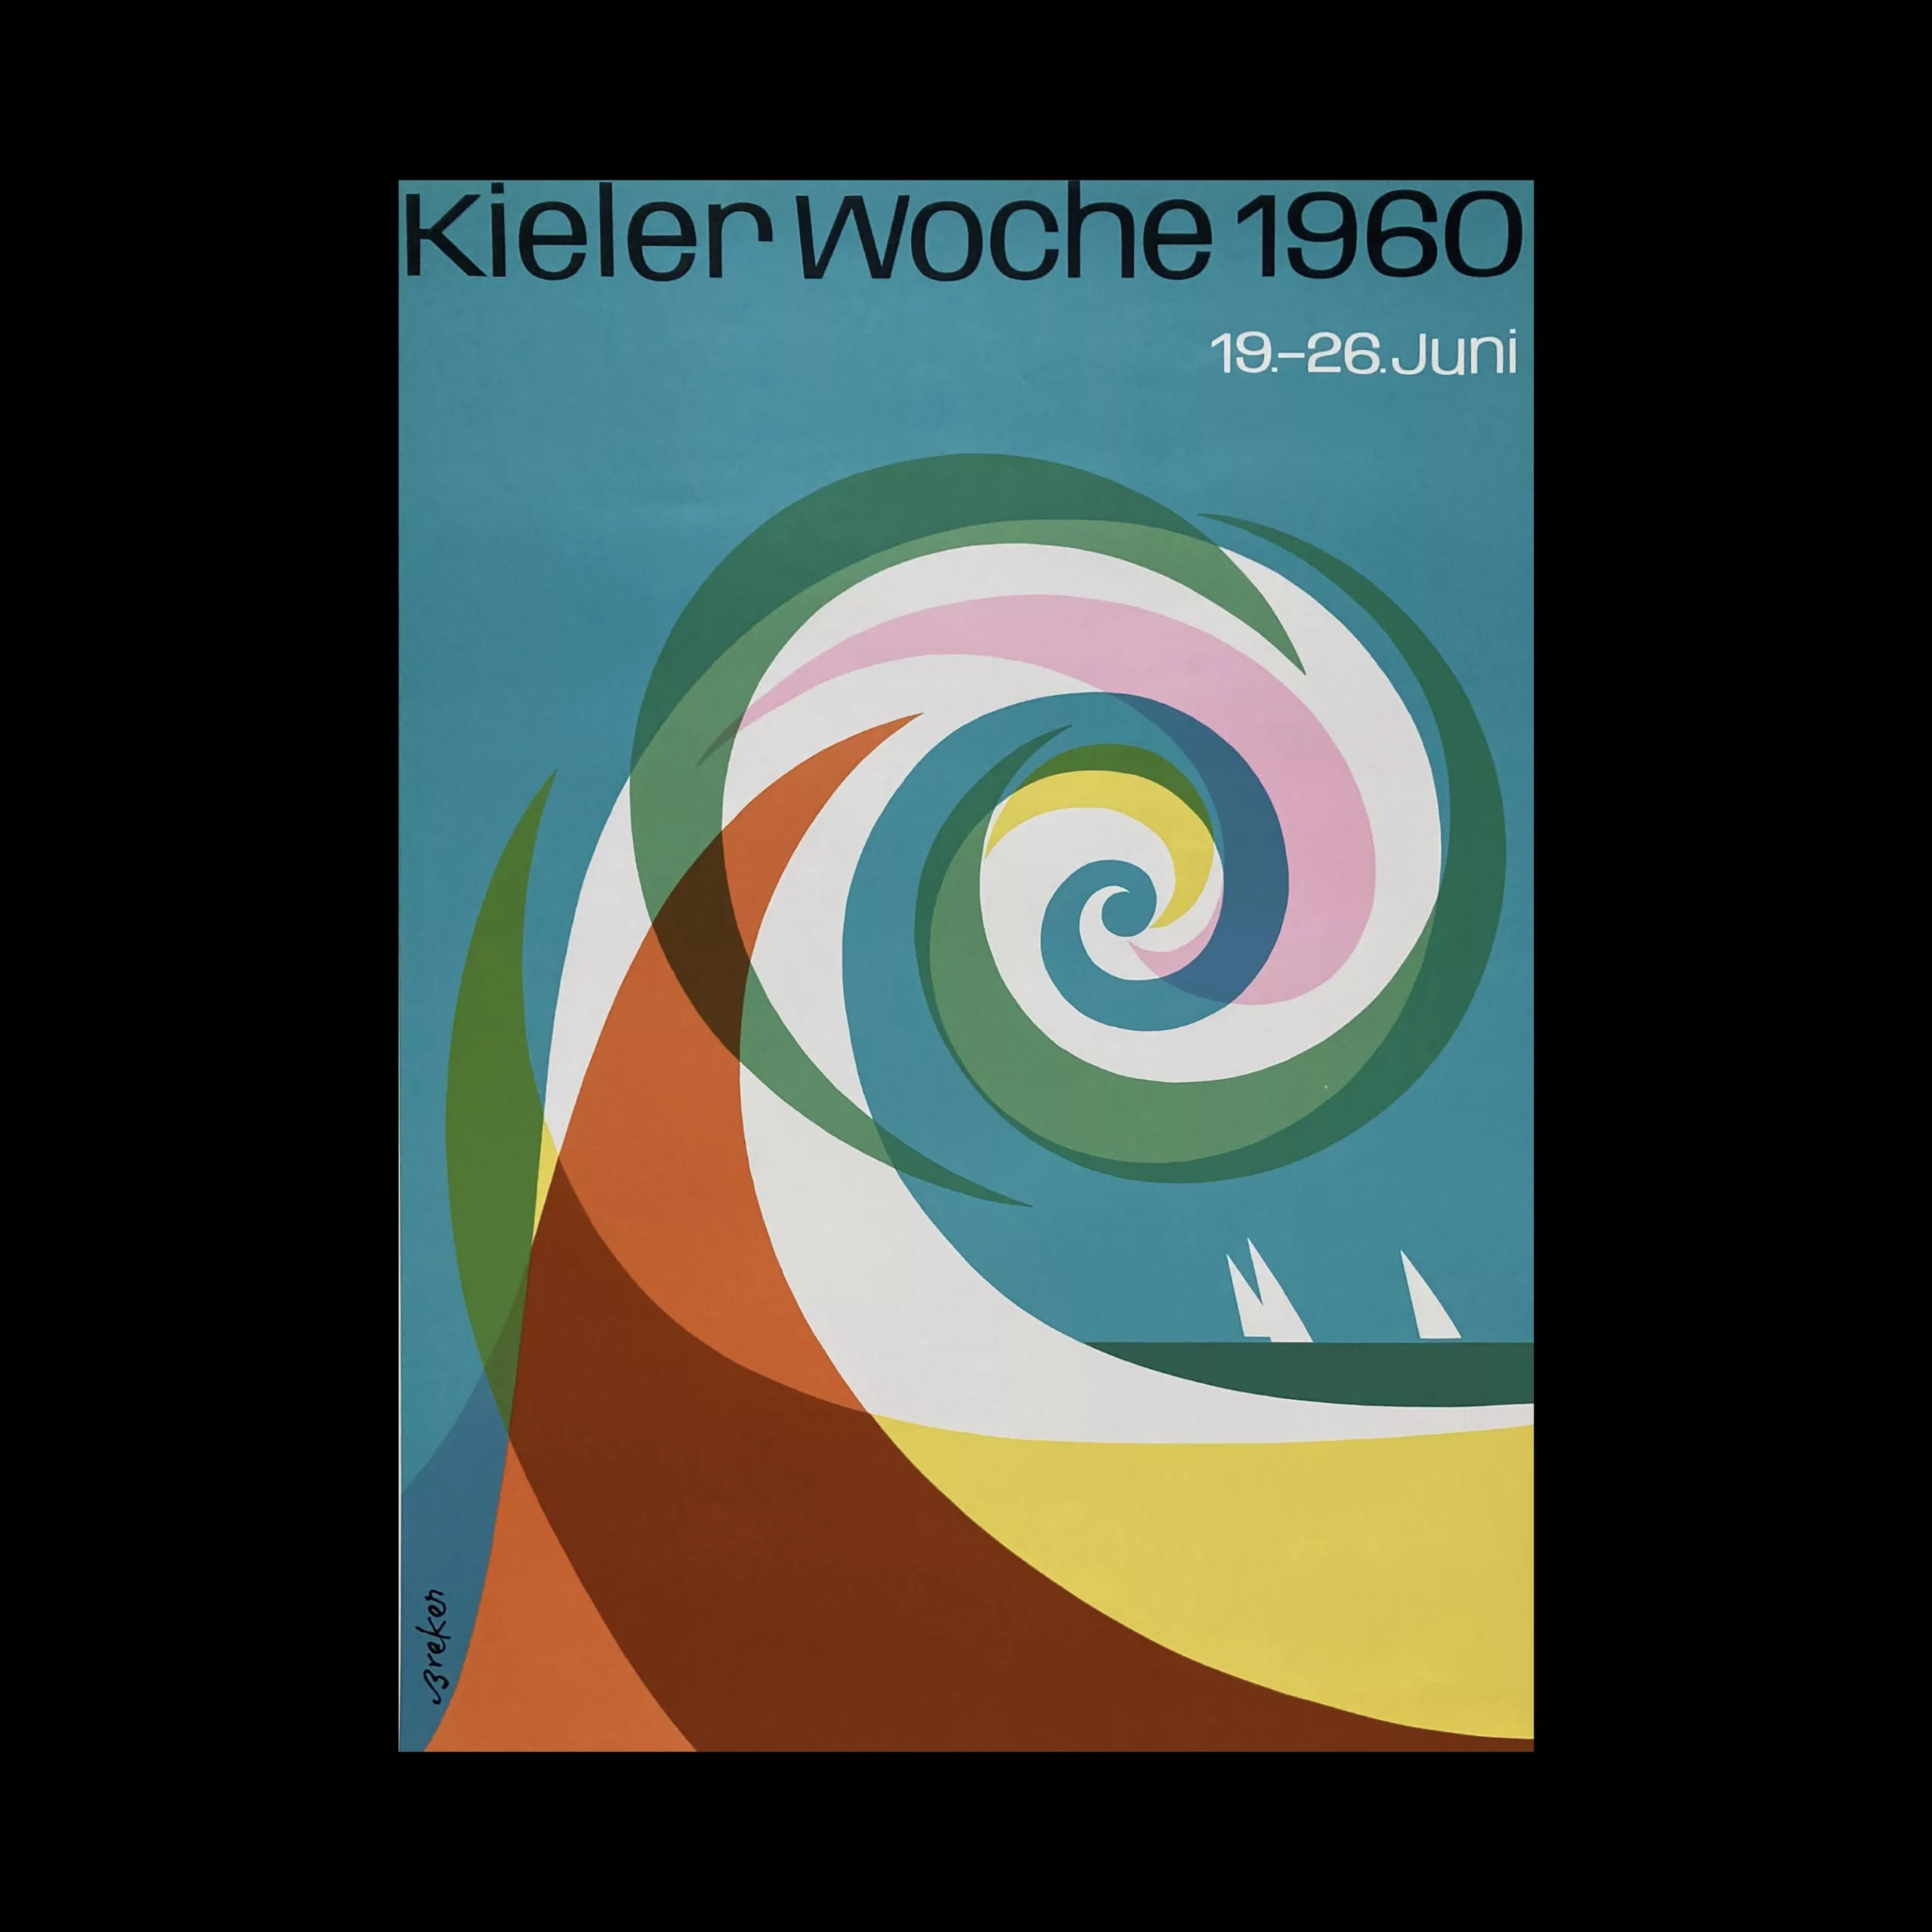 Kiel Week 1960 designed by Walter Breker, 1960